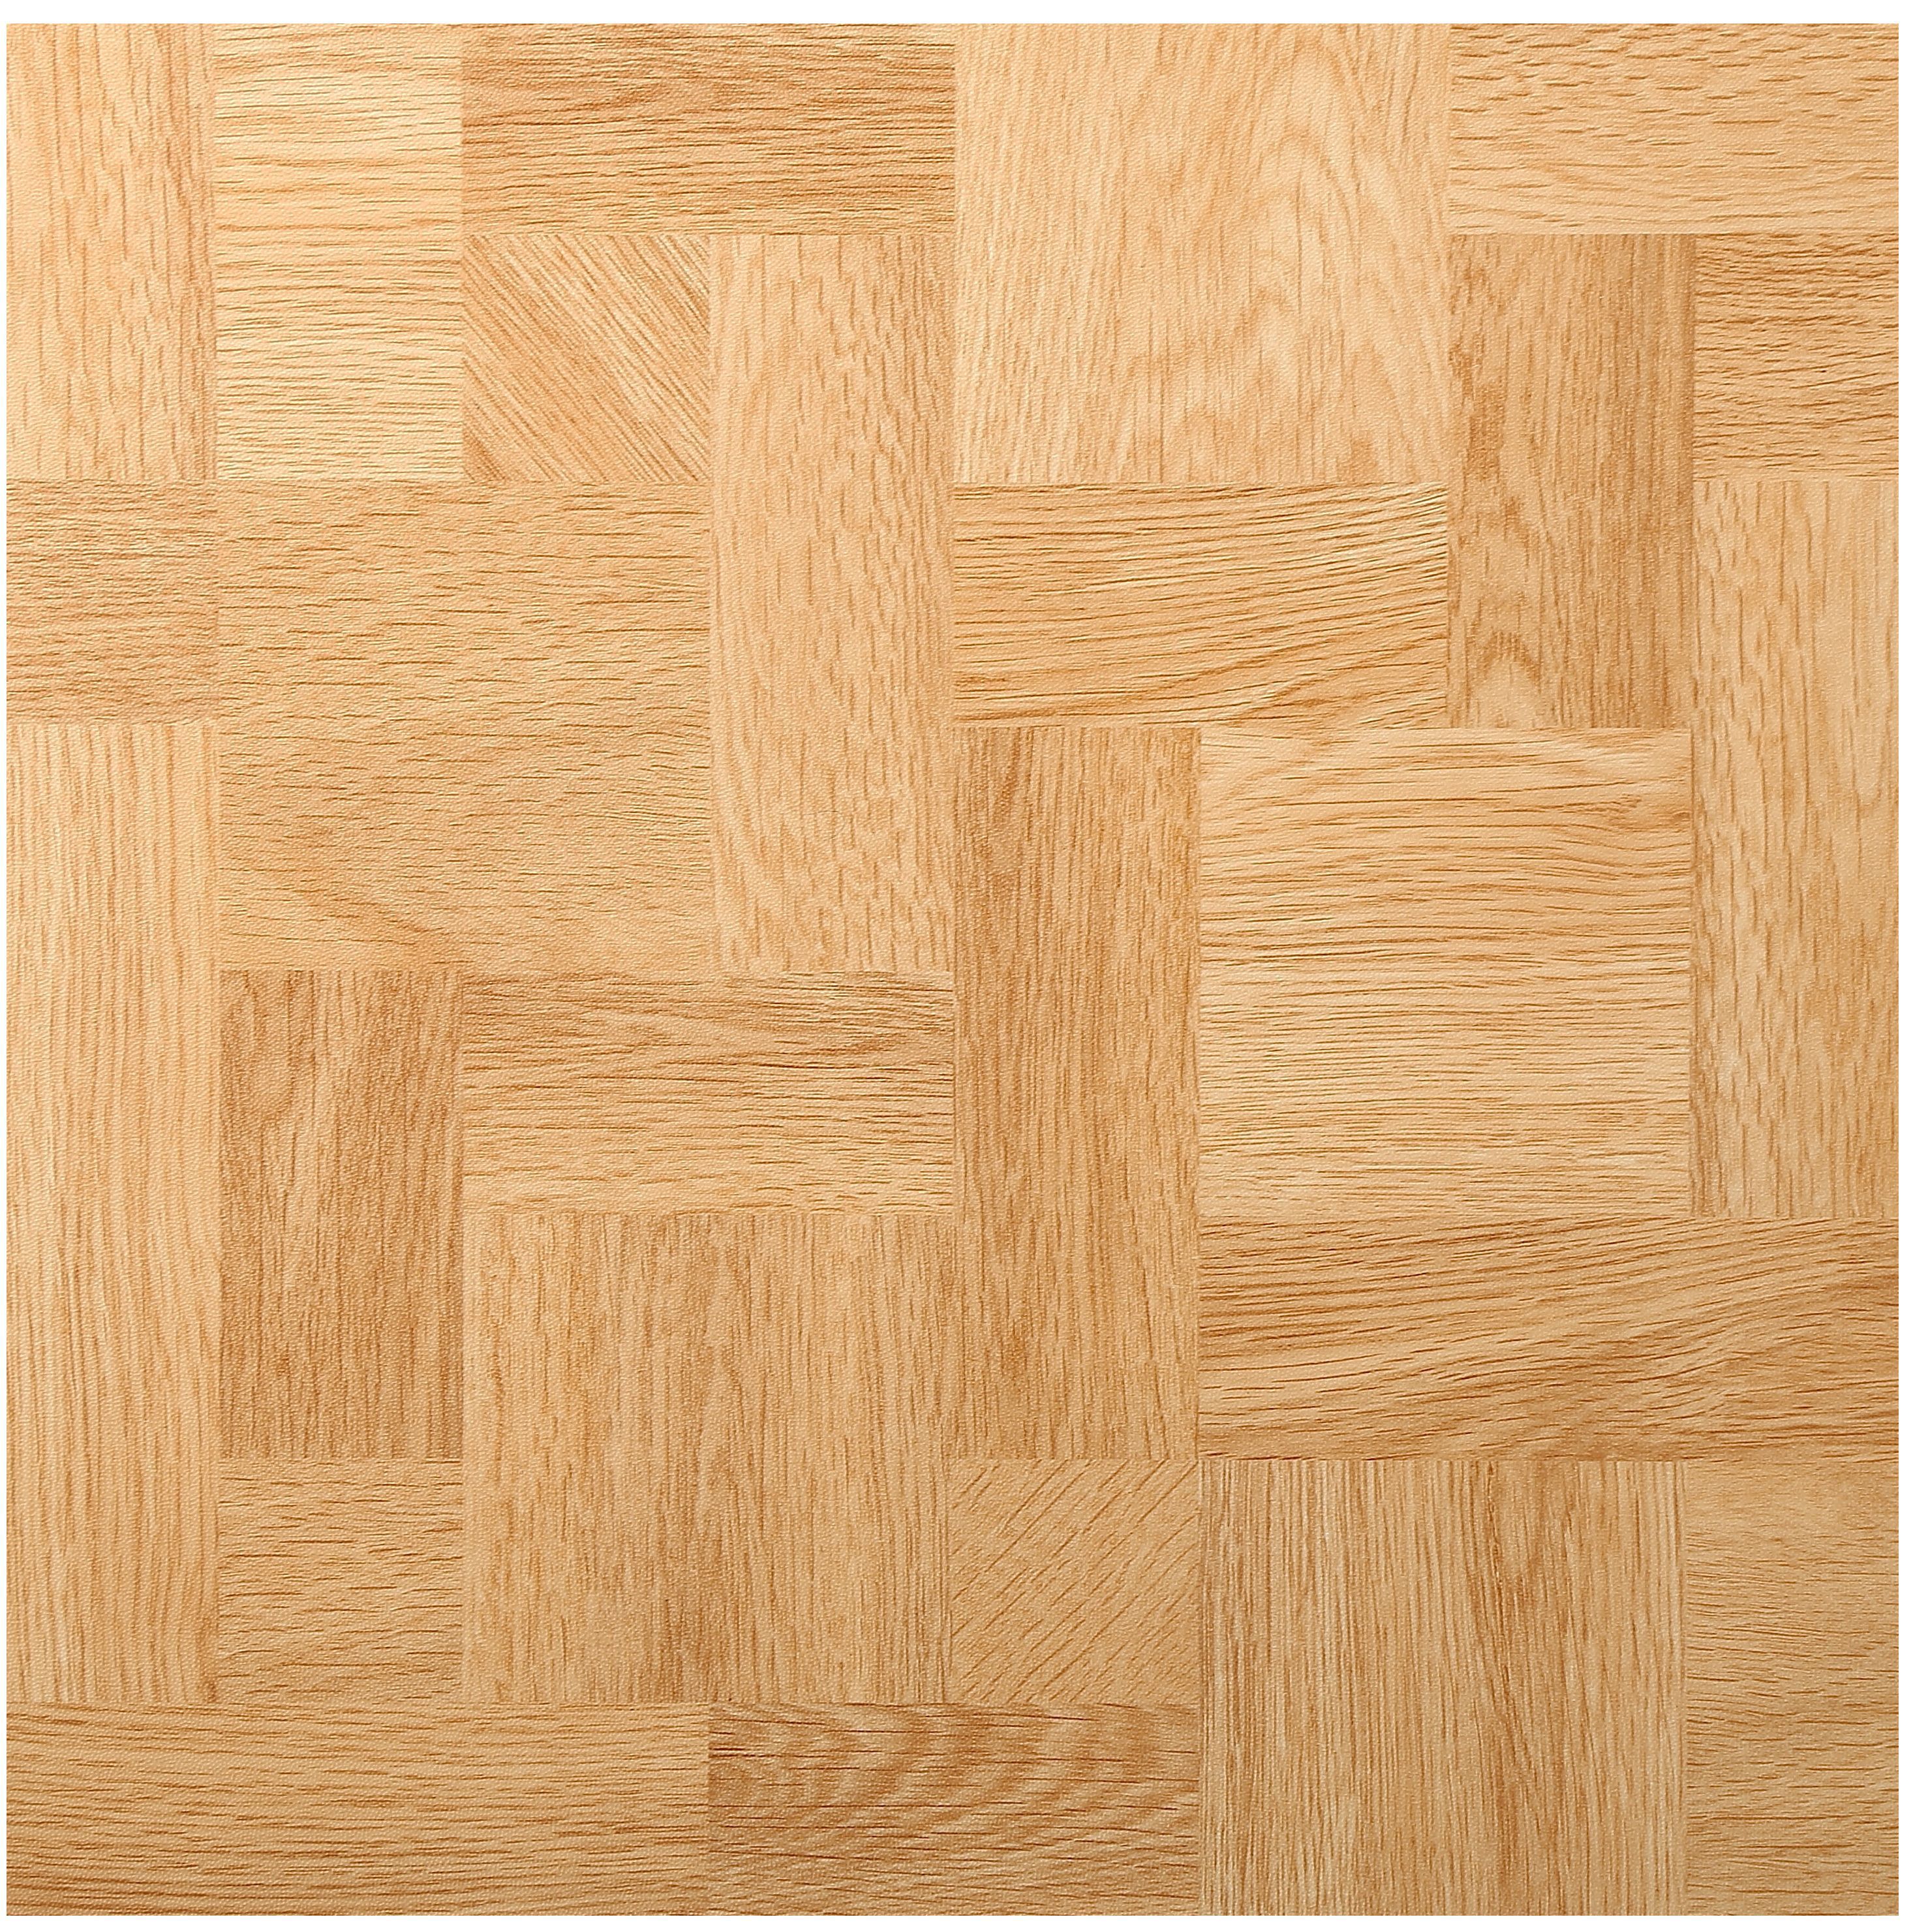 Natural Wood effect Vinyl tile, Pack of 11